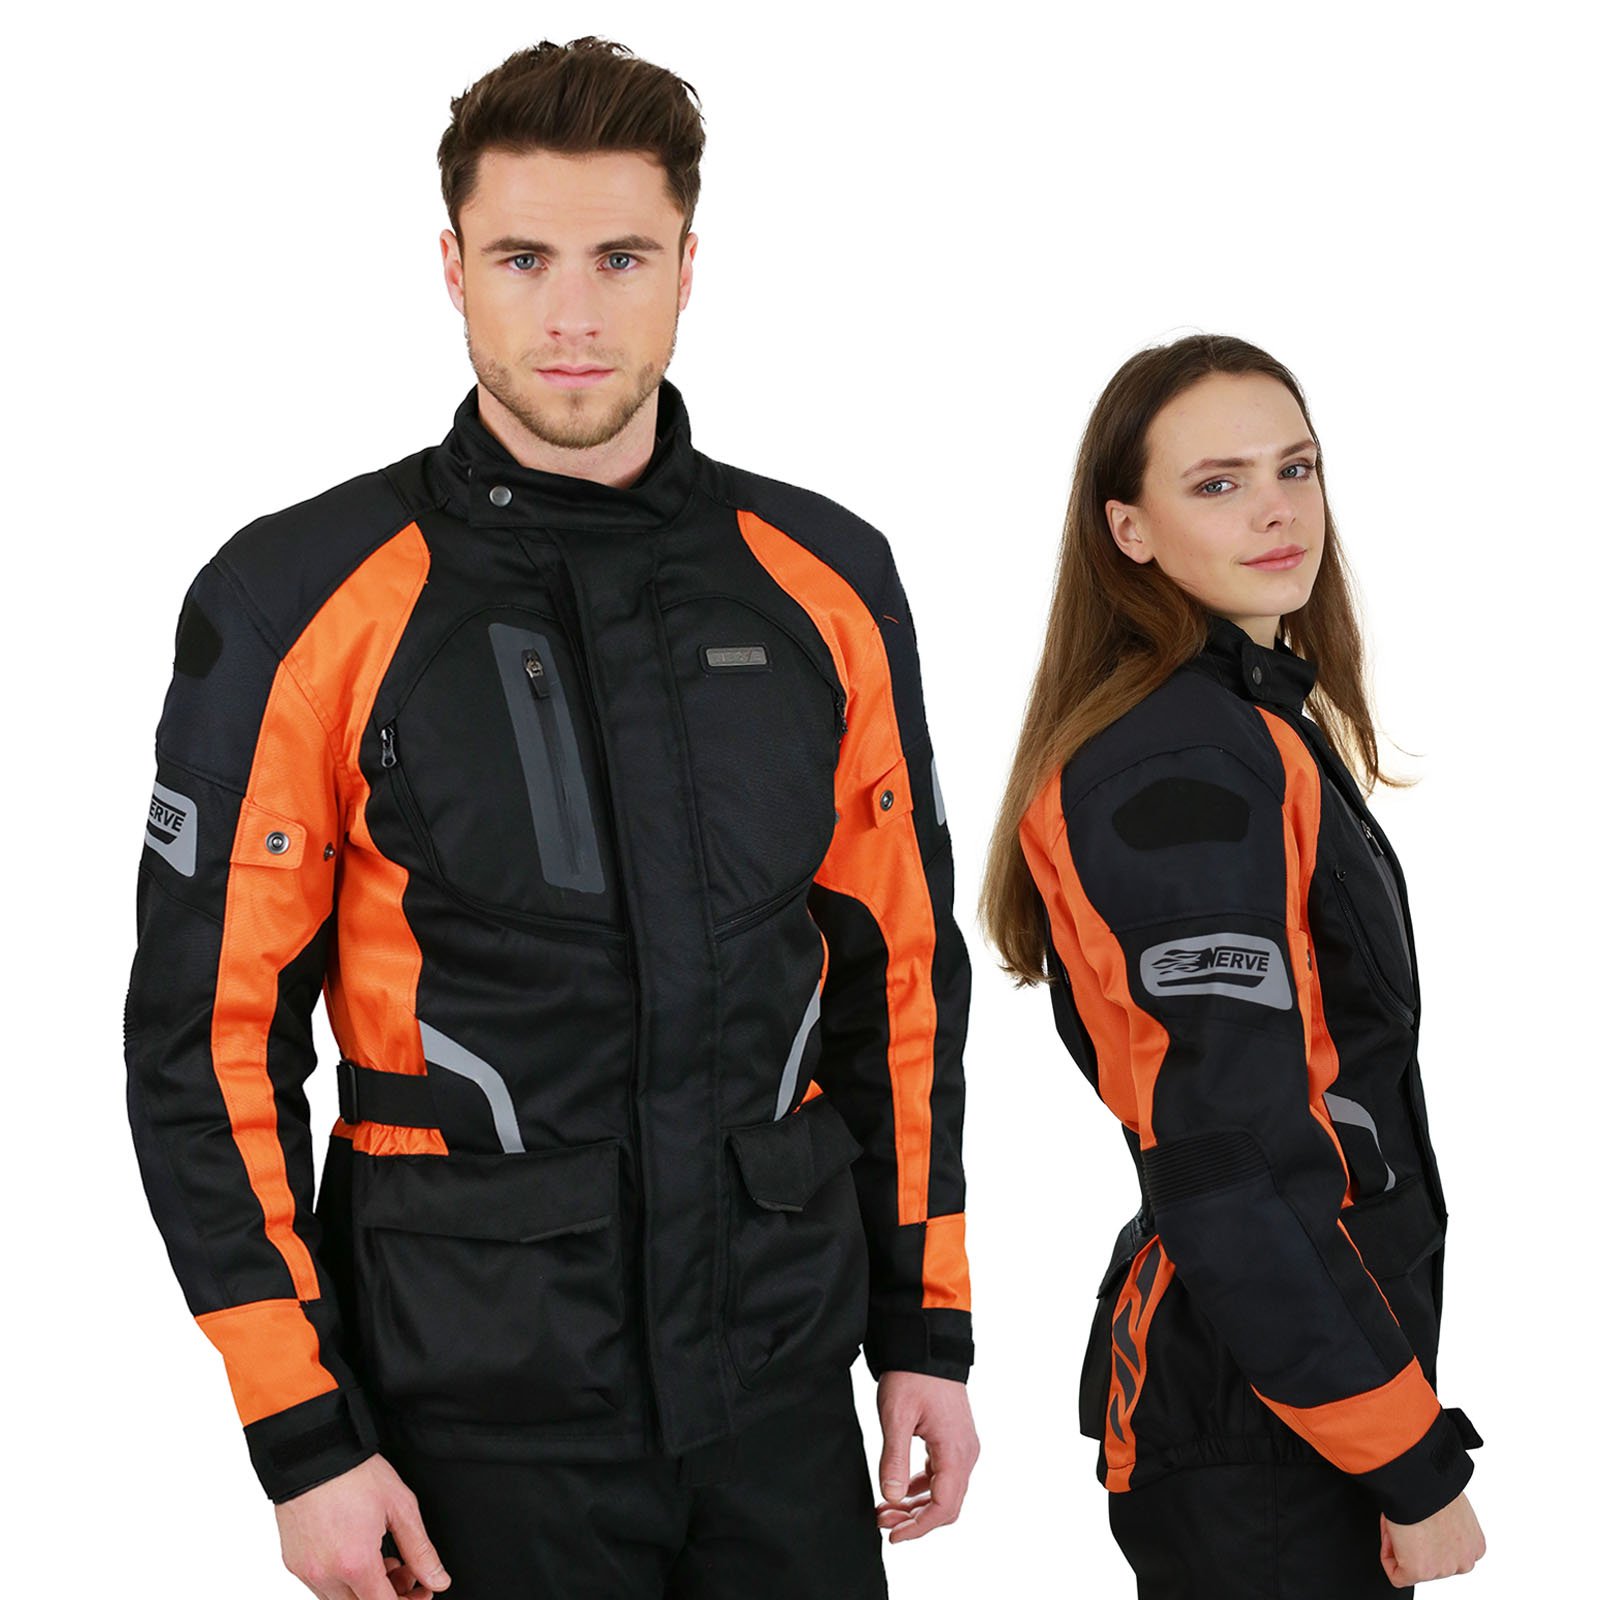 Motorradjacke -Spark- Sommer Winter Motorrad Roller Jacke Protektorenjacke Textil Herren Wasserdicht mit Protektoren - Schwarz-Neon-Orange - 2XL / XXL